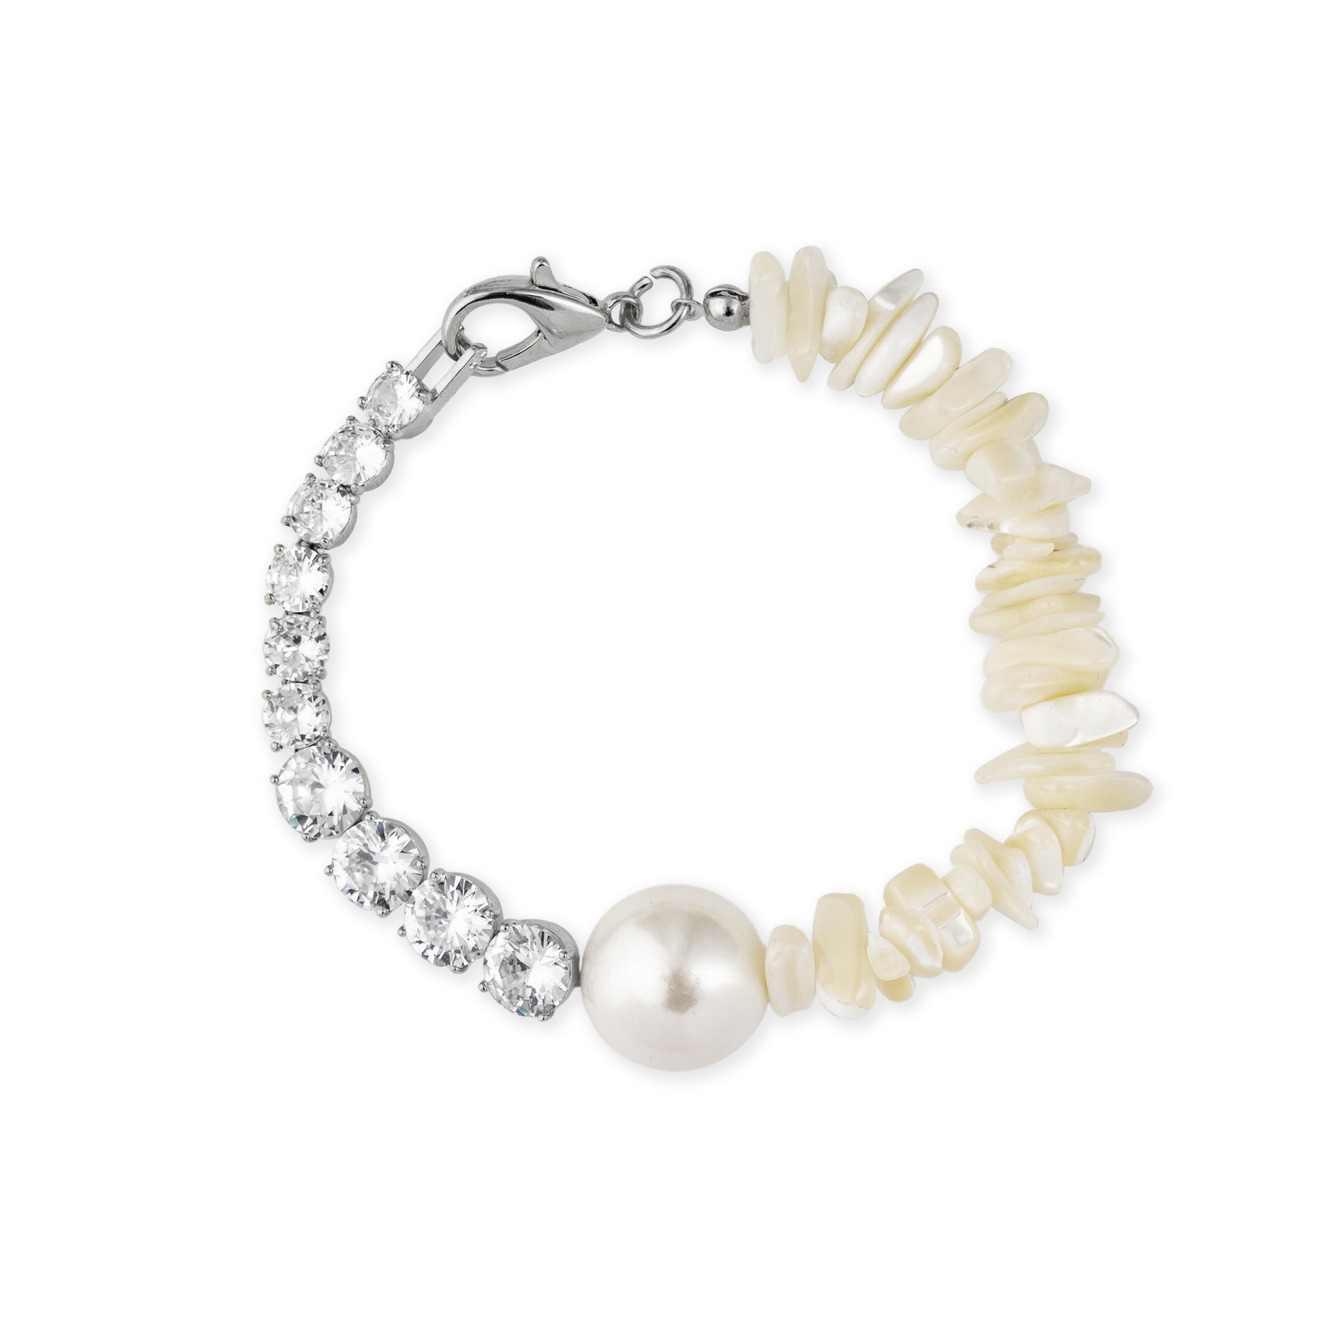 Free Form Jewelry Серебристый браслет с перламутром, жемчугом и кристаллами lisa smith серебристый открытый браслет с жемчугом